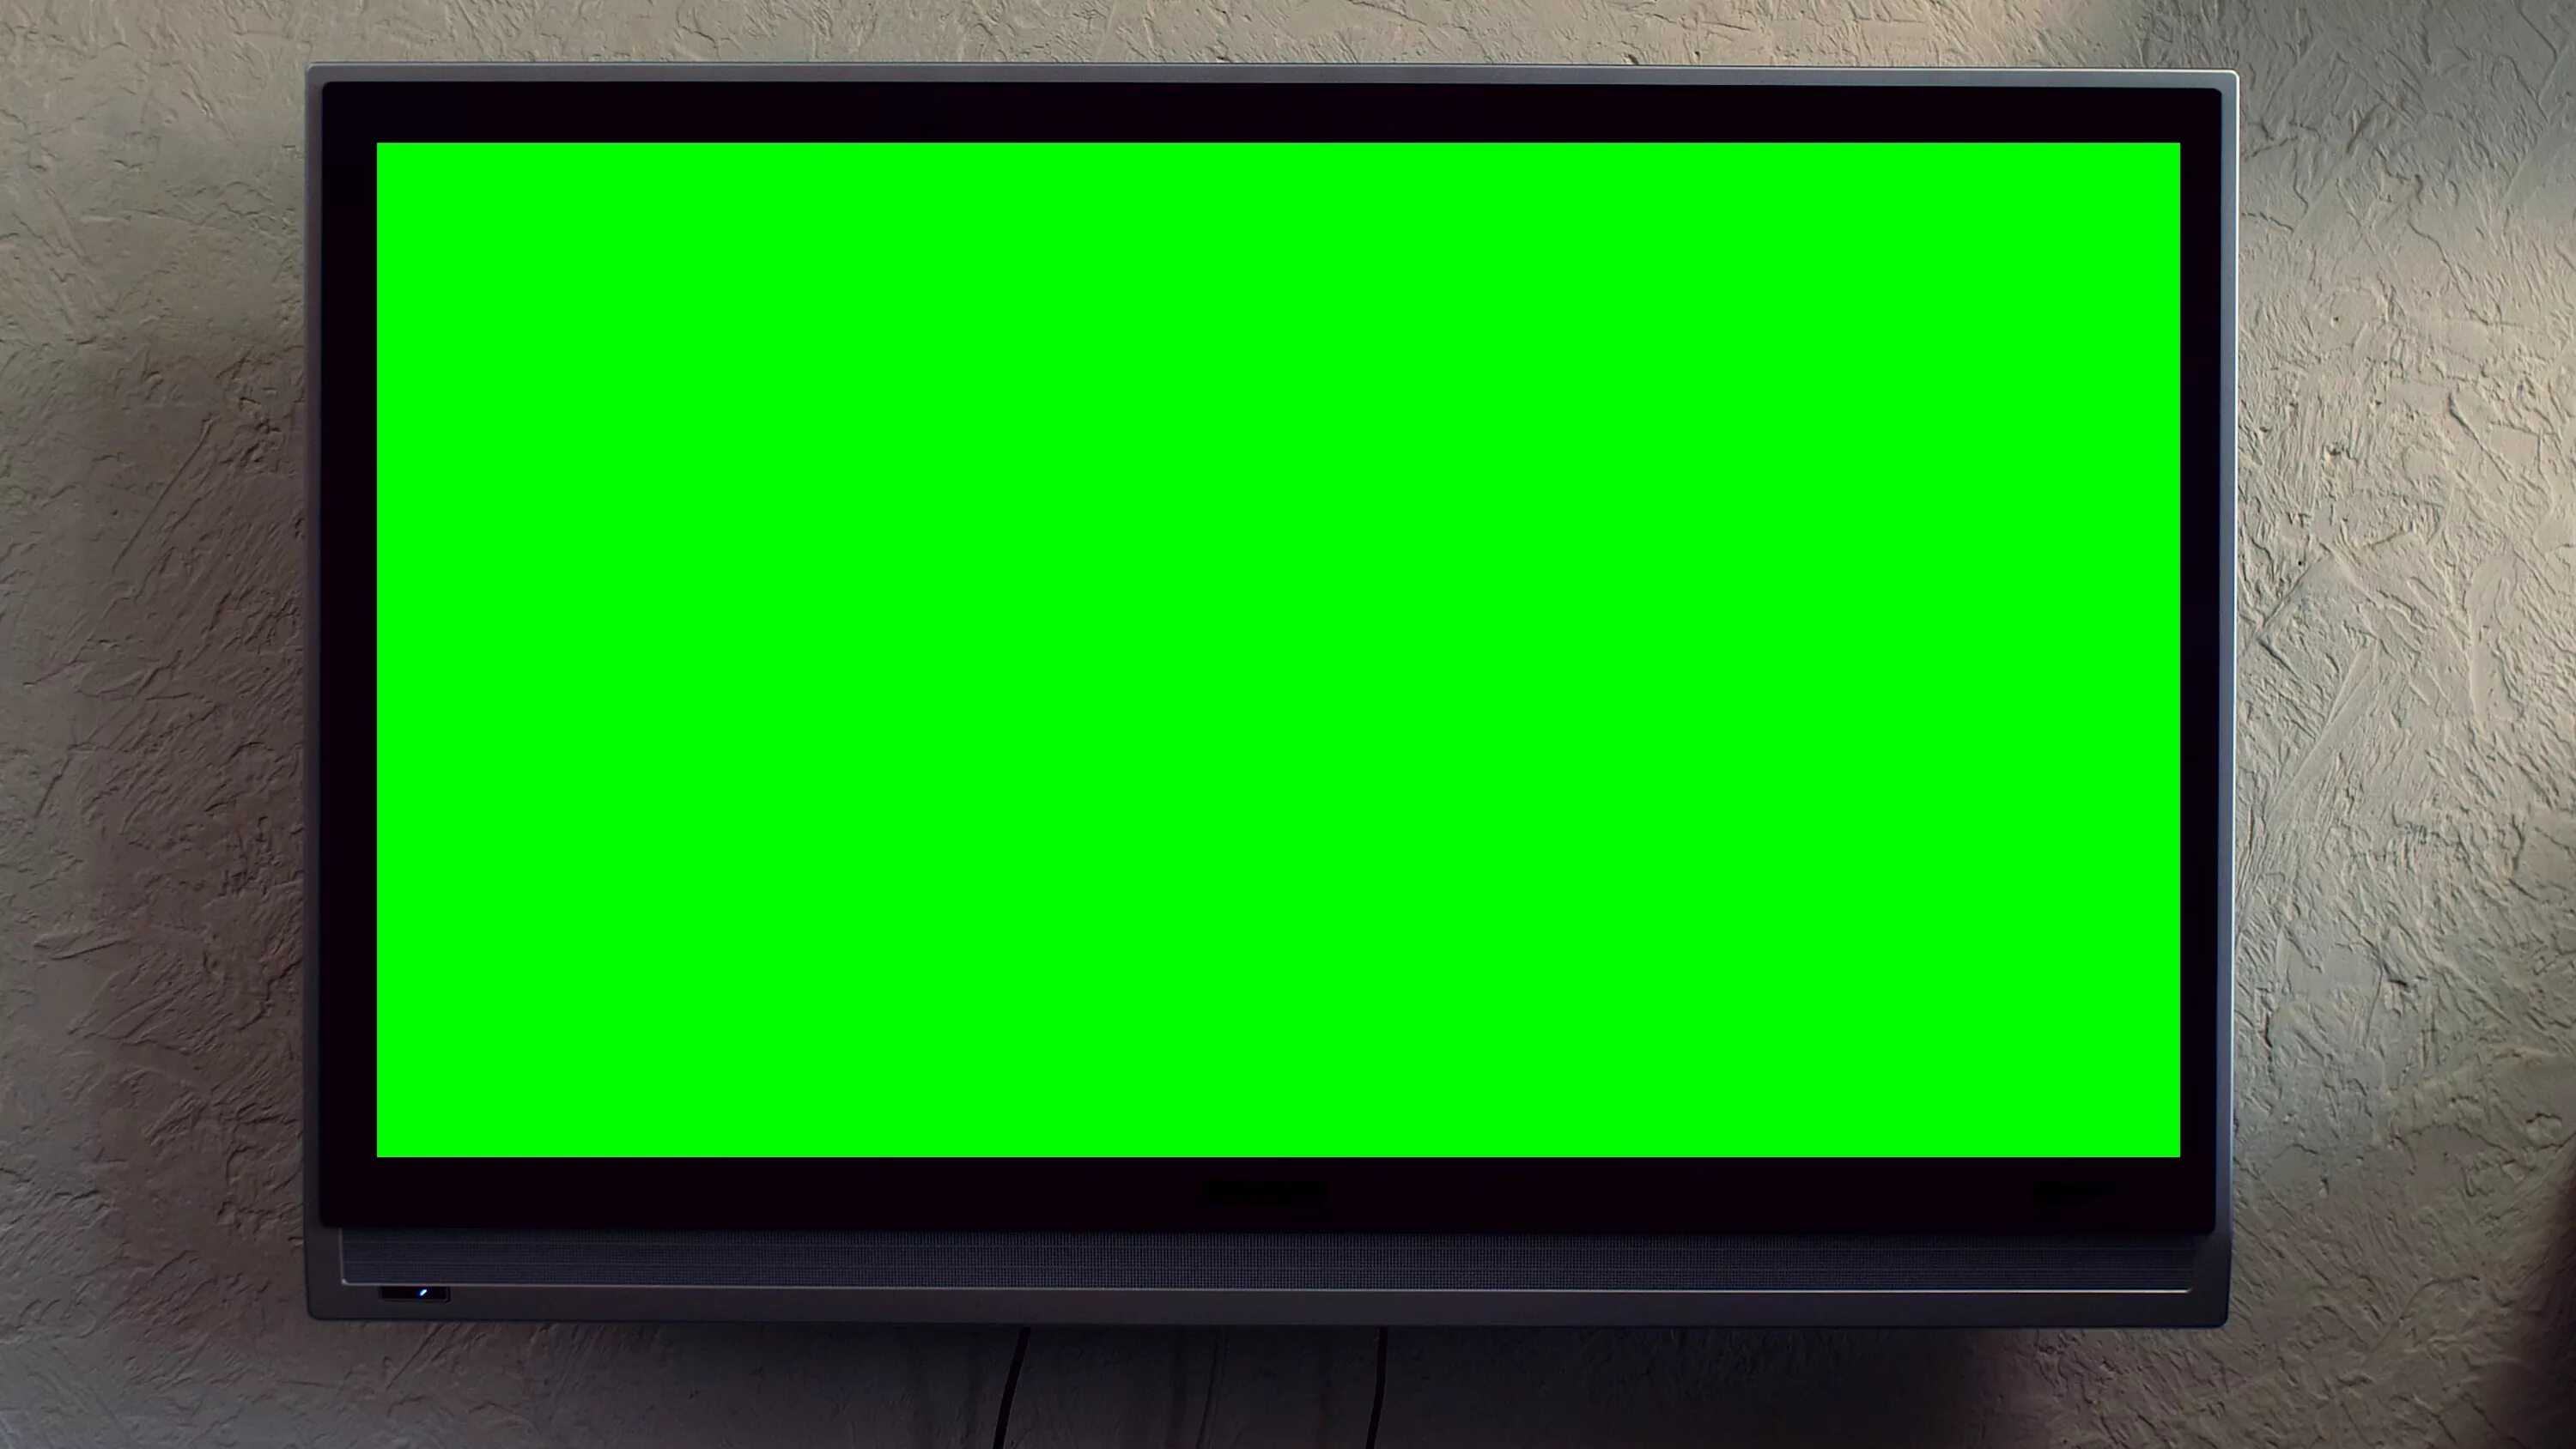 Телевизор Грин скрин. Старый телевизор Грин скрин. Телевизор хромакей. Телевизор с зеленым экраном.